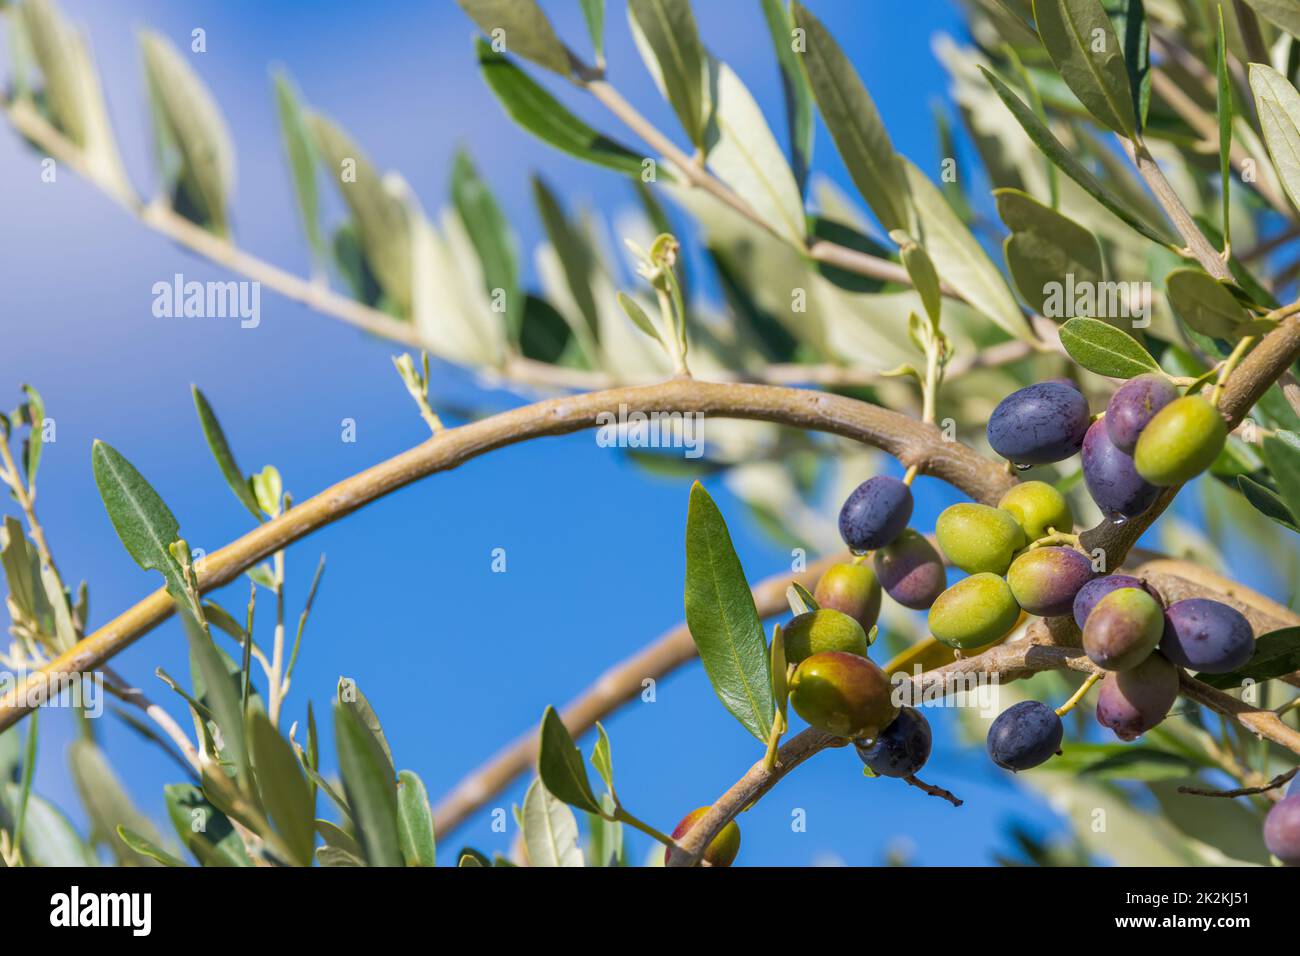 Toskanischer Olivenbaum, Oliven in verschiedenen Stadien der Reifung, weicher Fokus Hintergrund Stockfoto